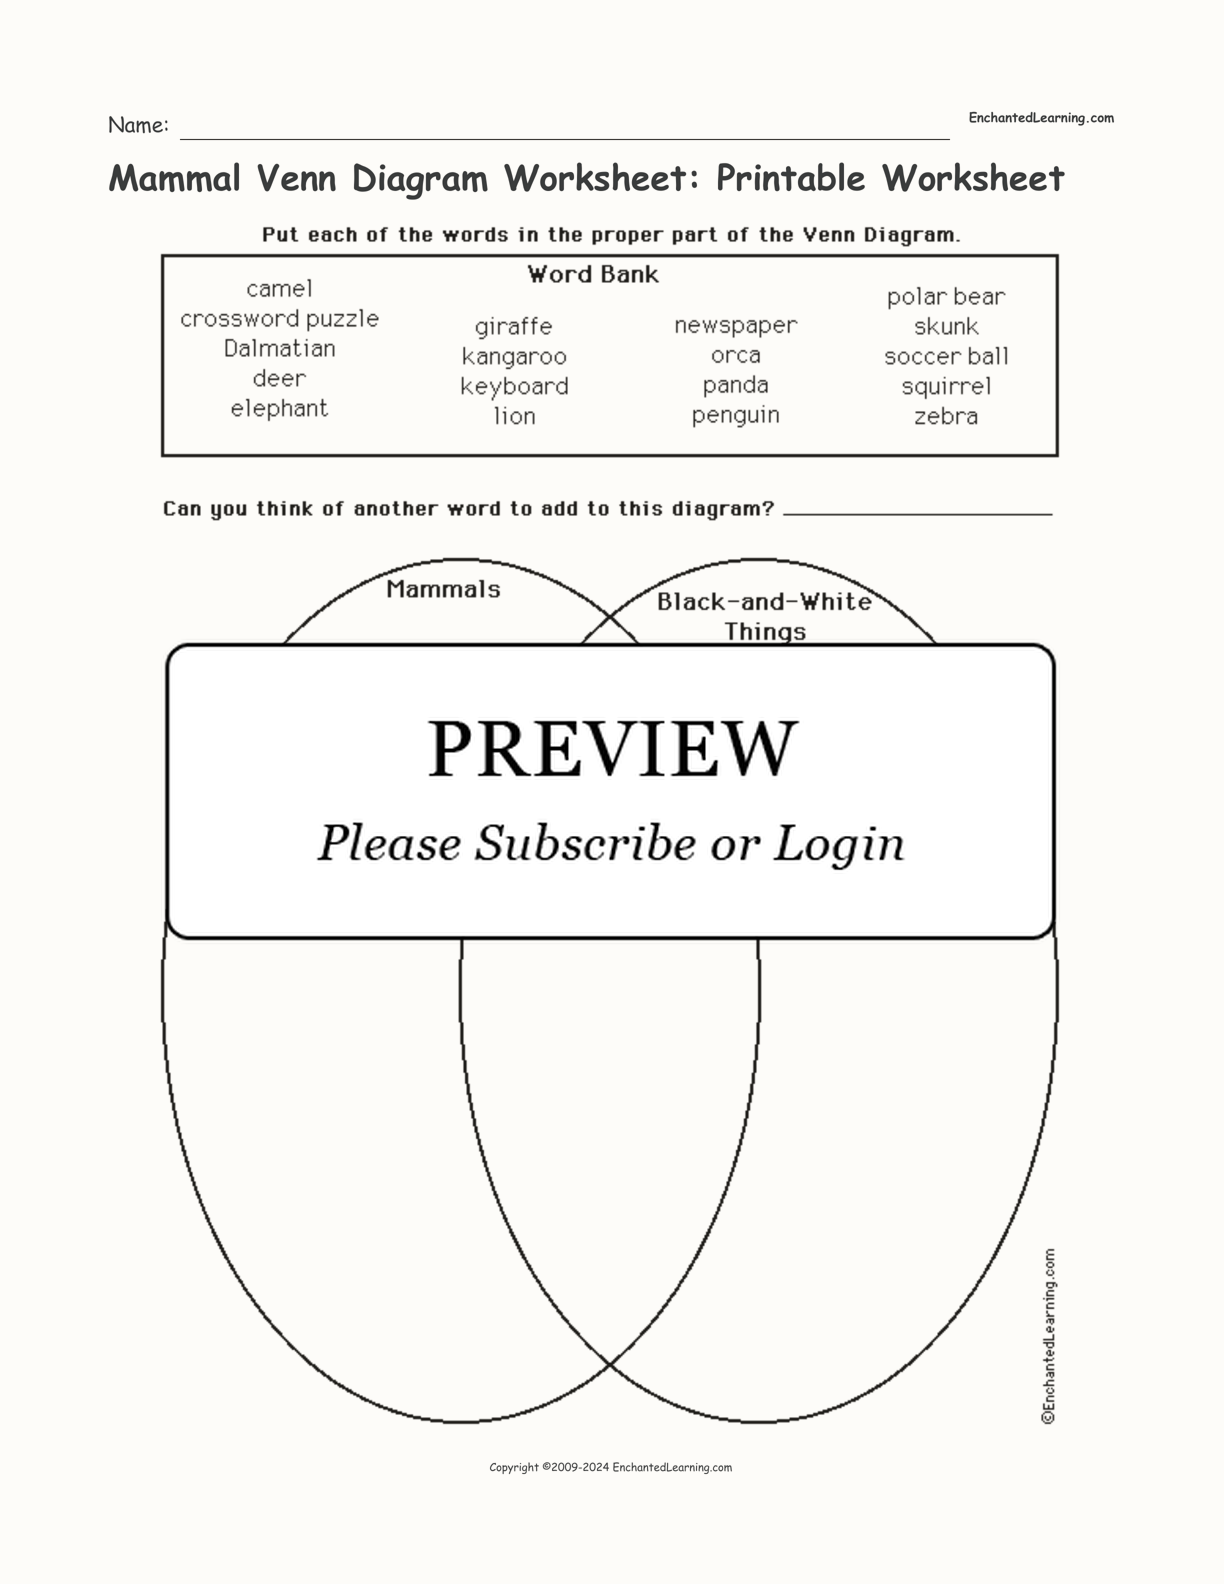 Mammal Venn Diagram Worksheet: Printable Worksheet interactive worksheet page 1